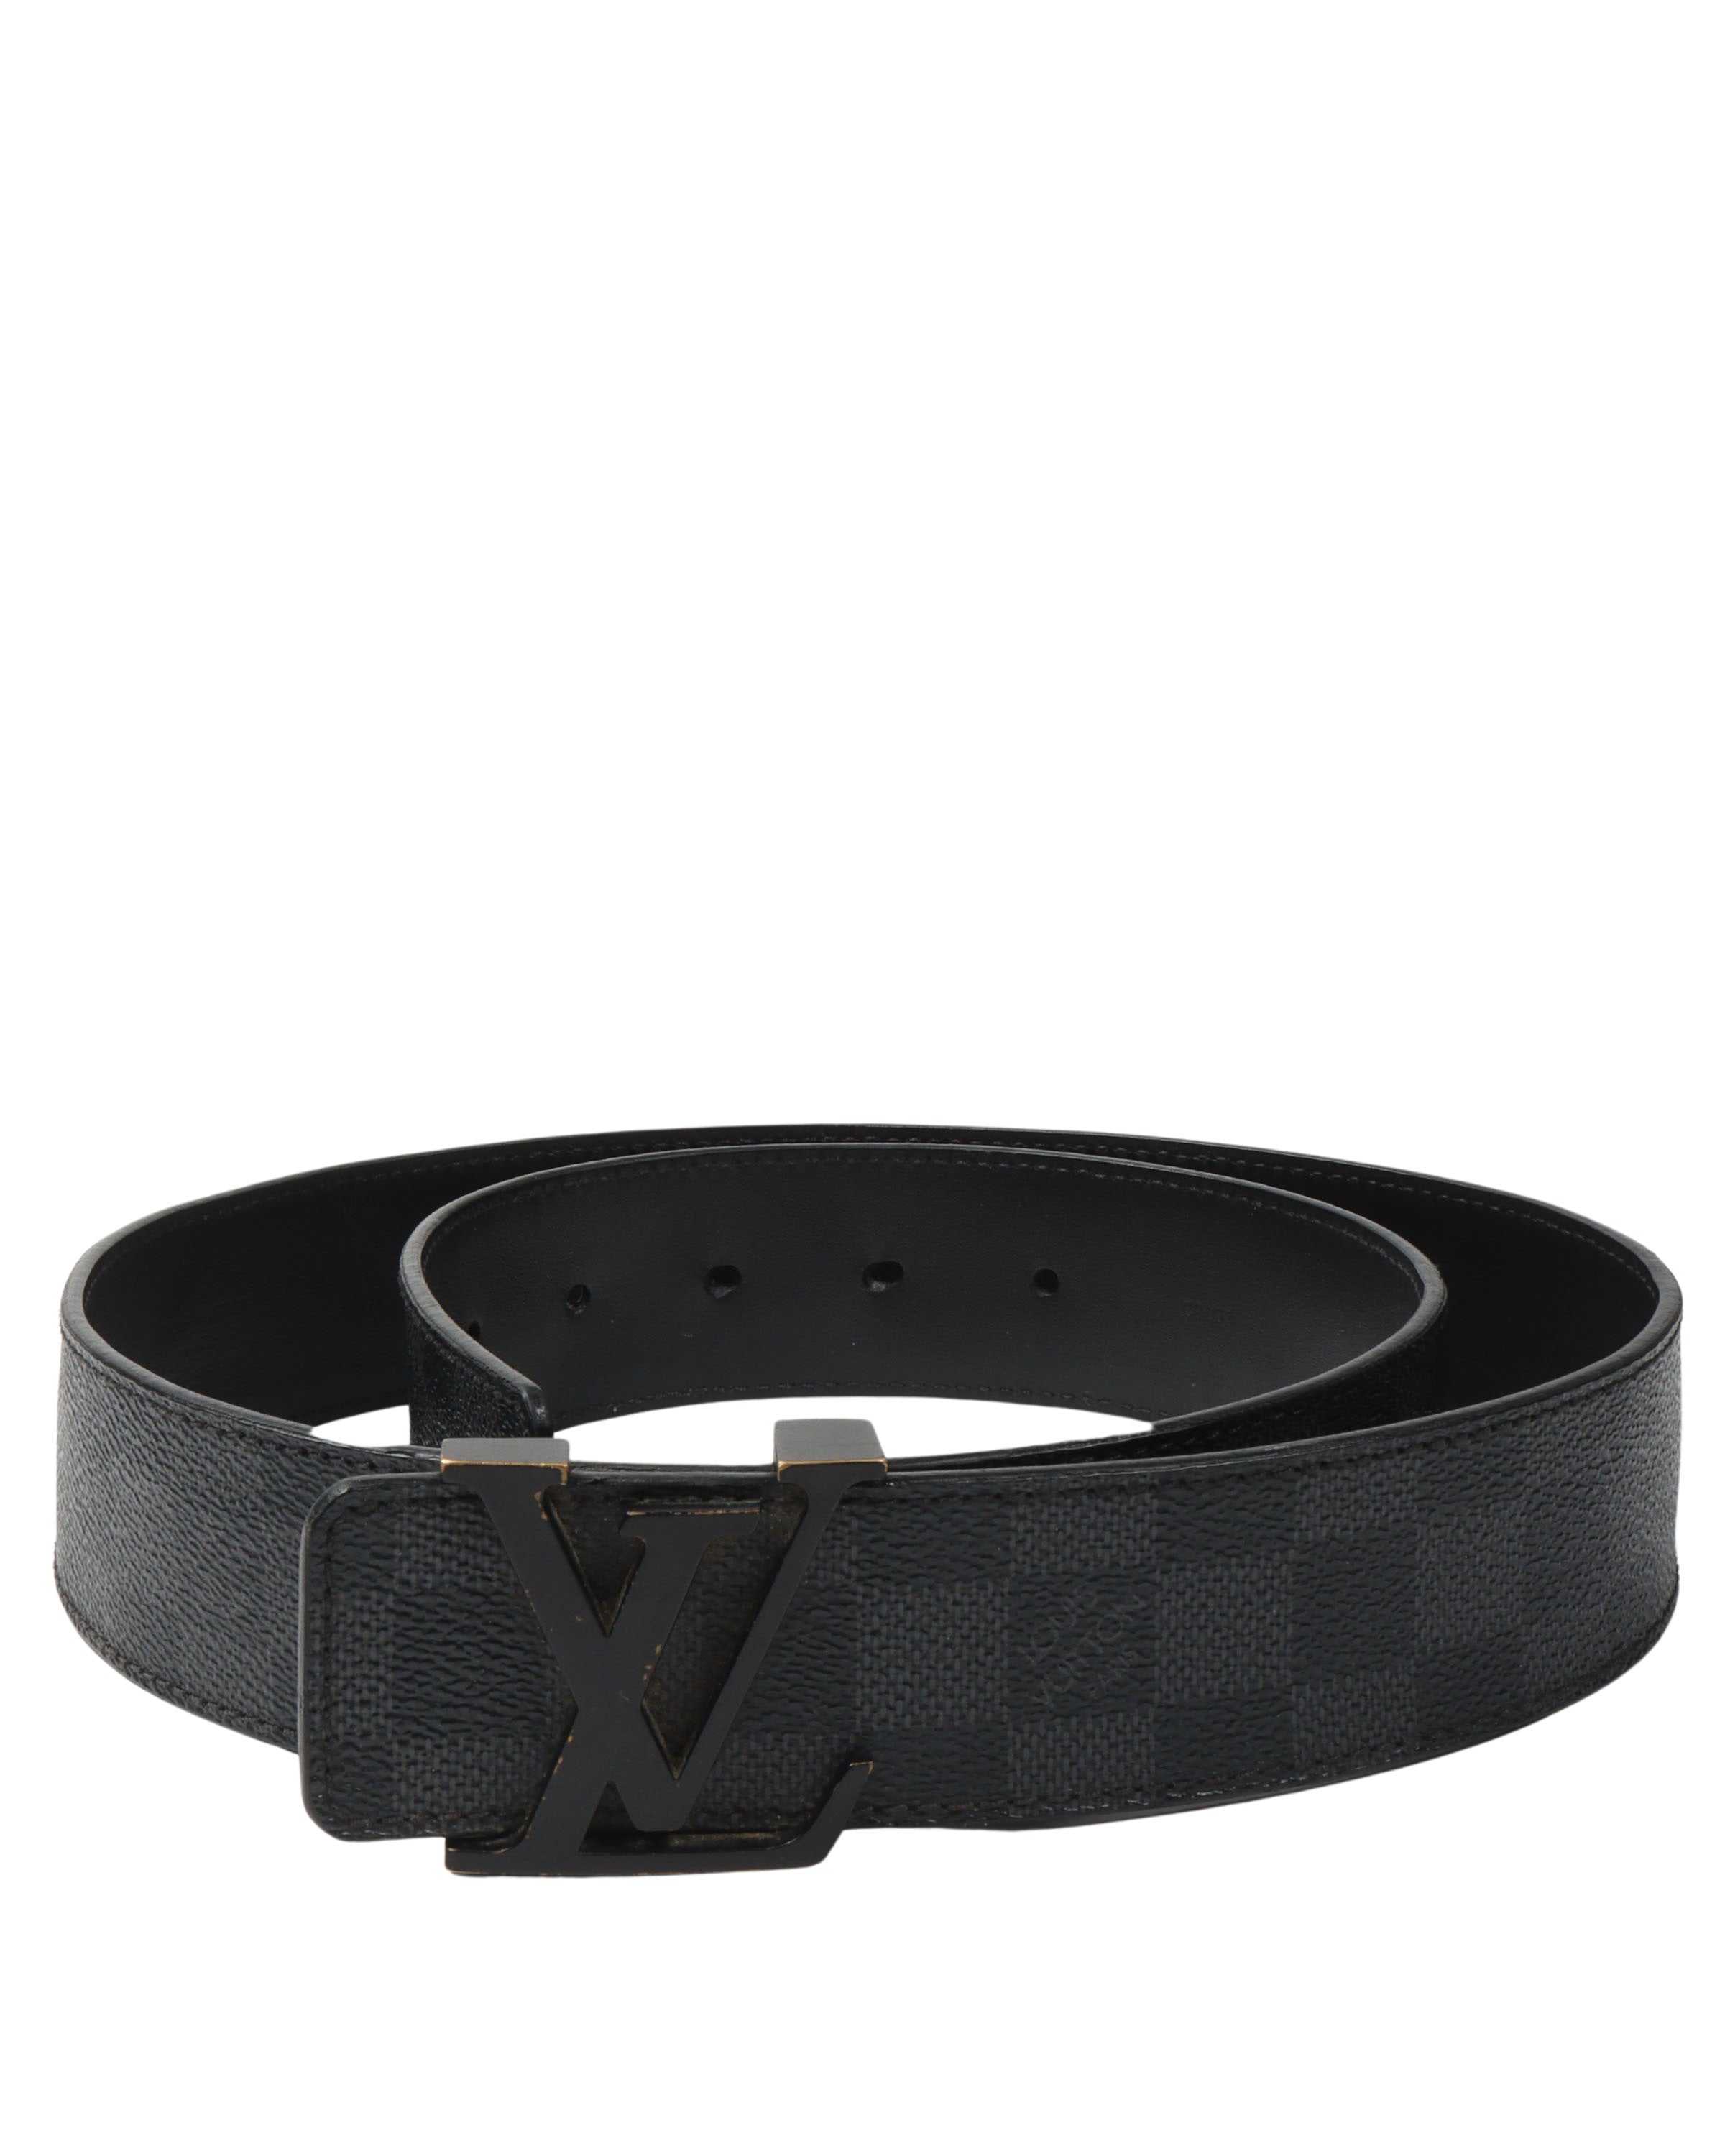 Louis Vuitton Damier Monogram Leather Belt